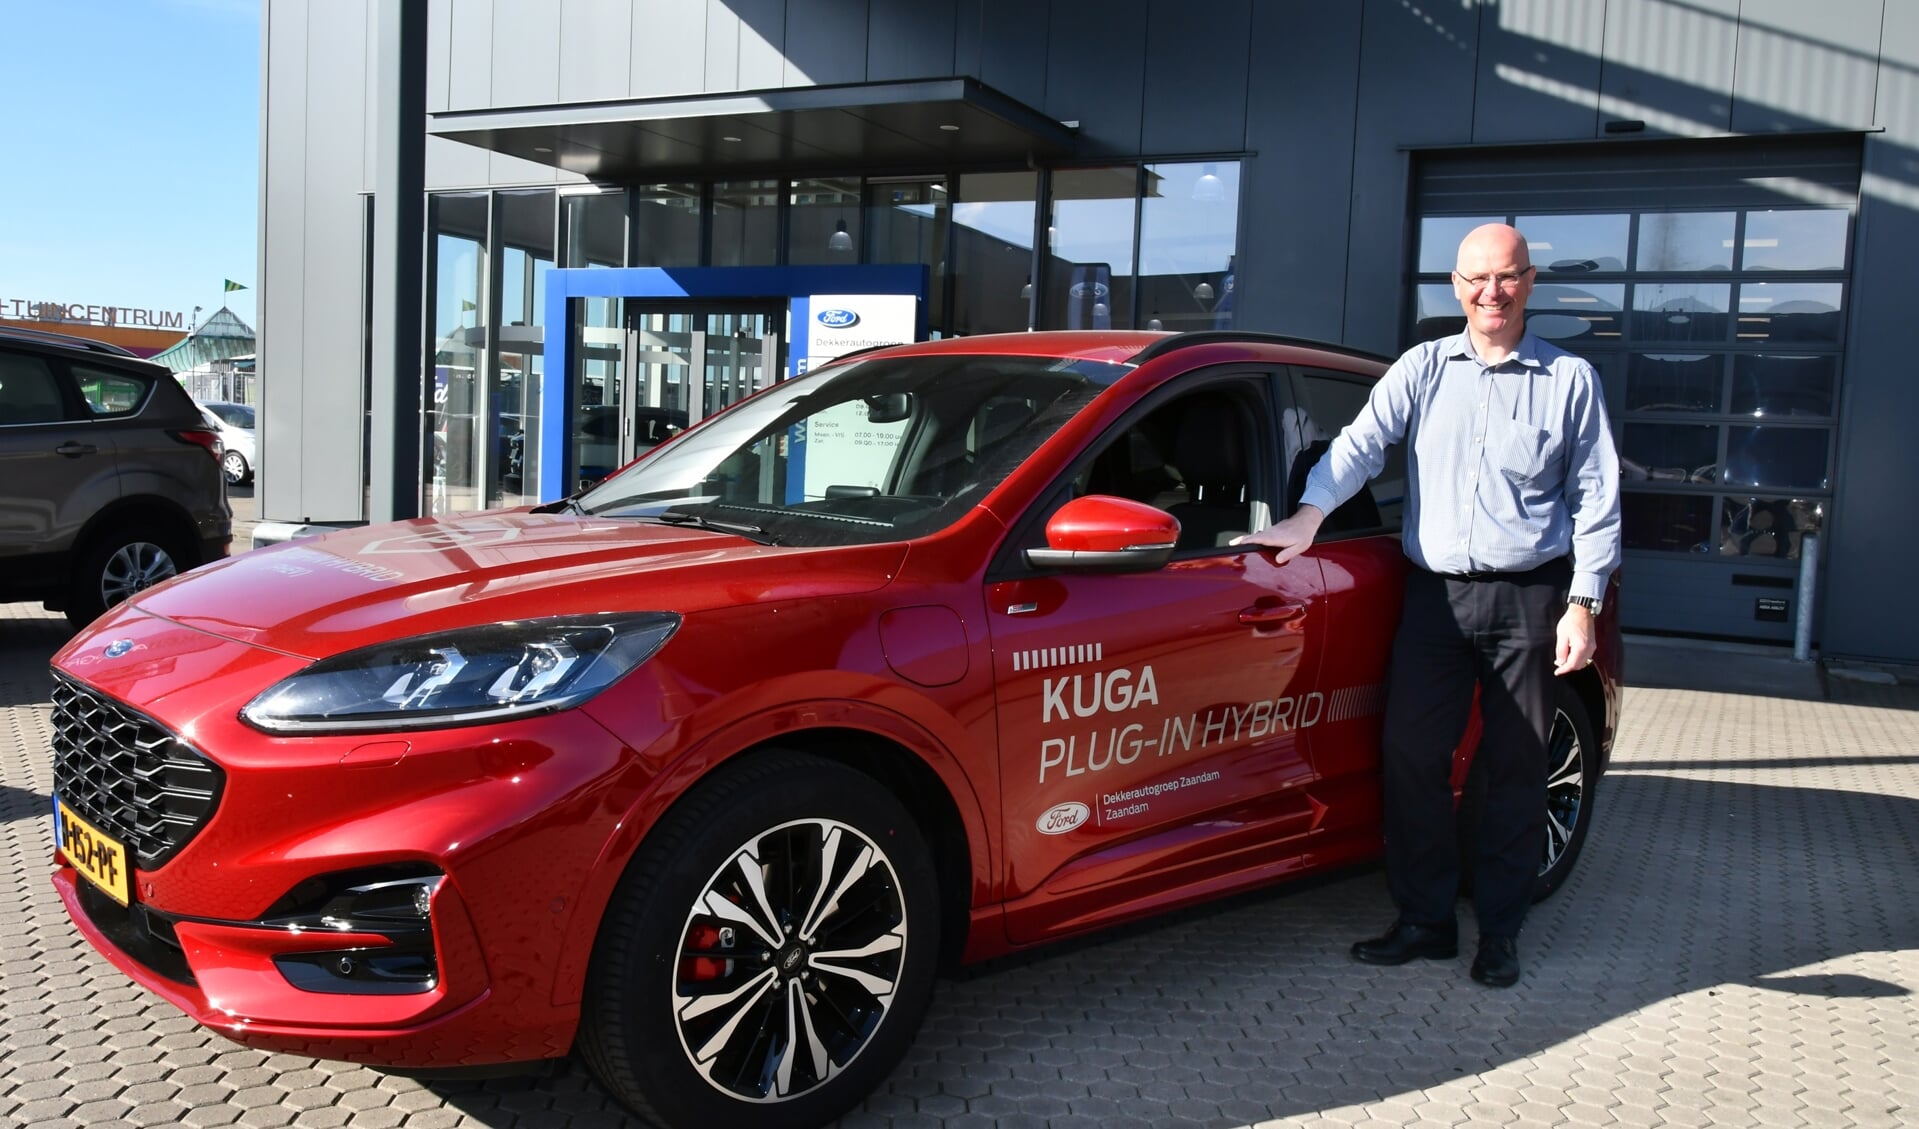 Verkoopadviseur Bert Ploeg van Dekkerautogroep, de Ford dealer met acht vestigingen door heel Noord-Holland, bij de nieuwe Kuga. 